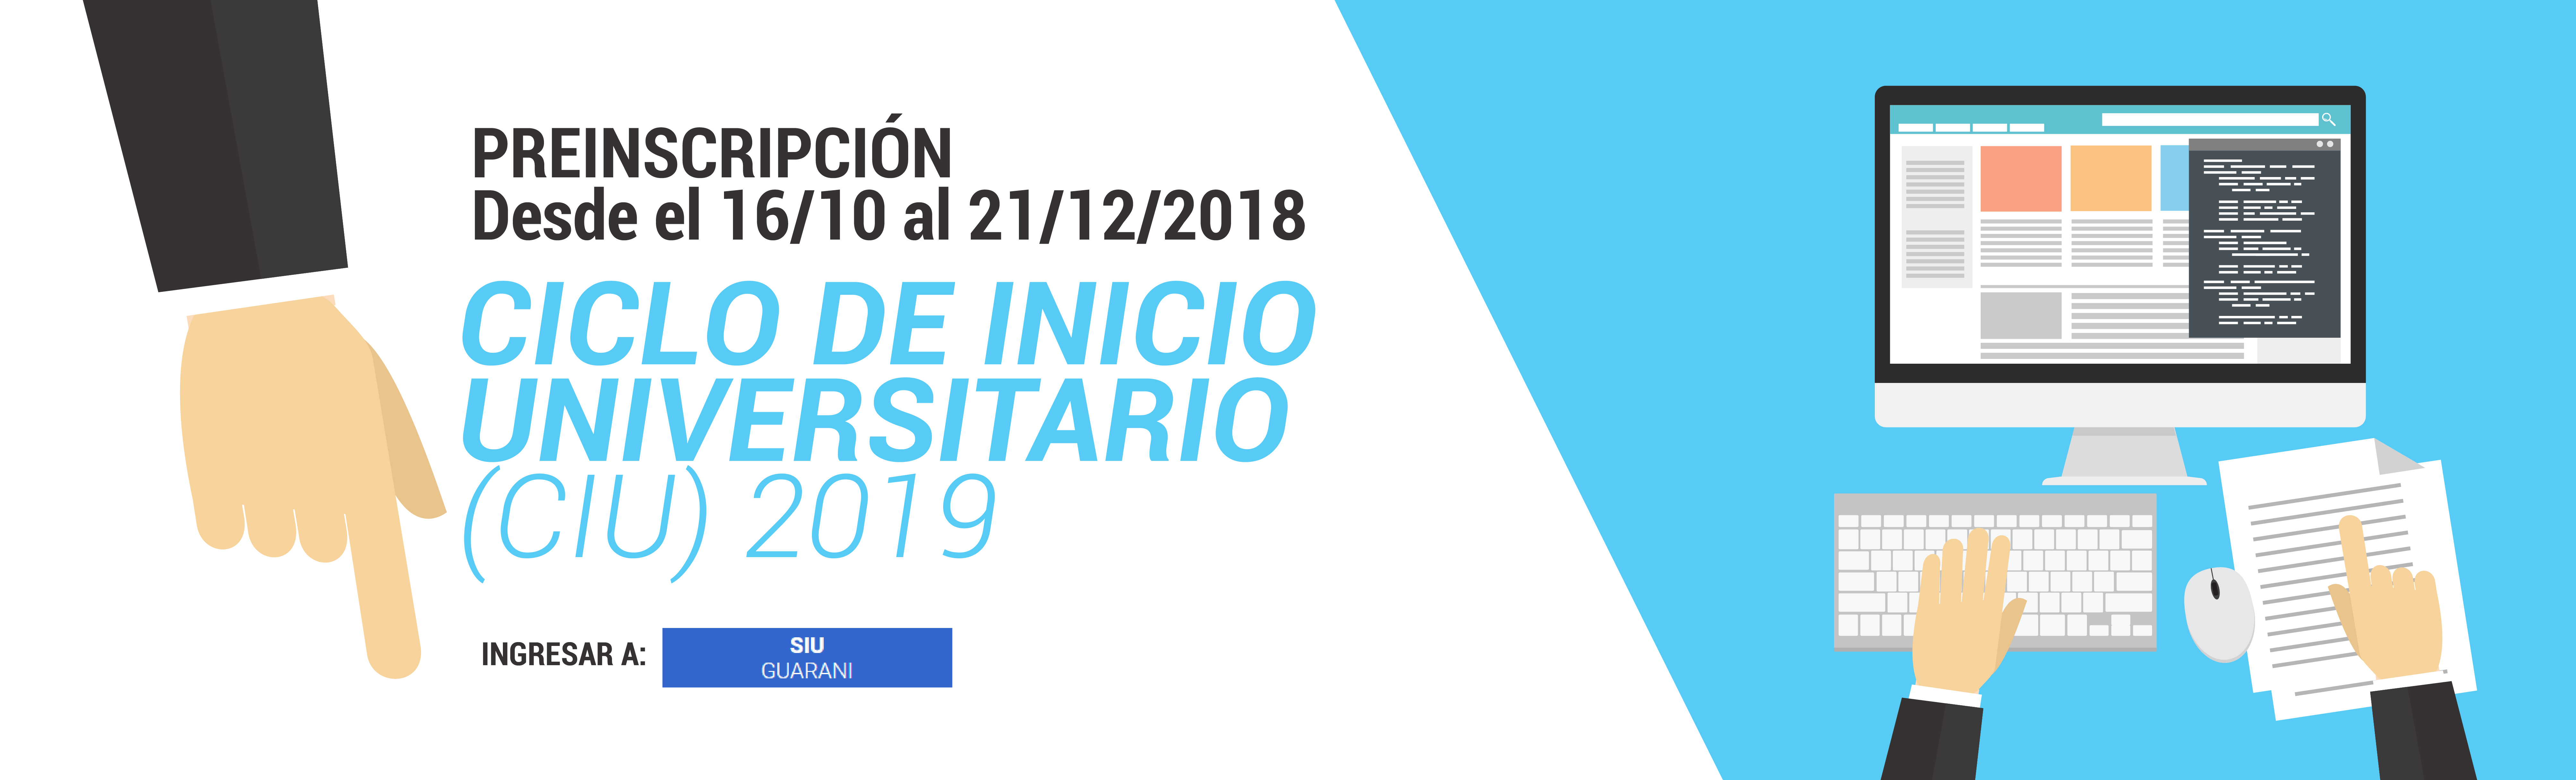 Ciclo de Inicio Universitario (CIU) 2019